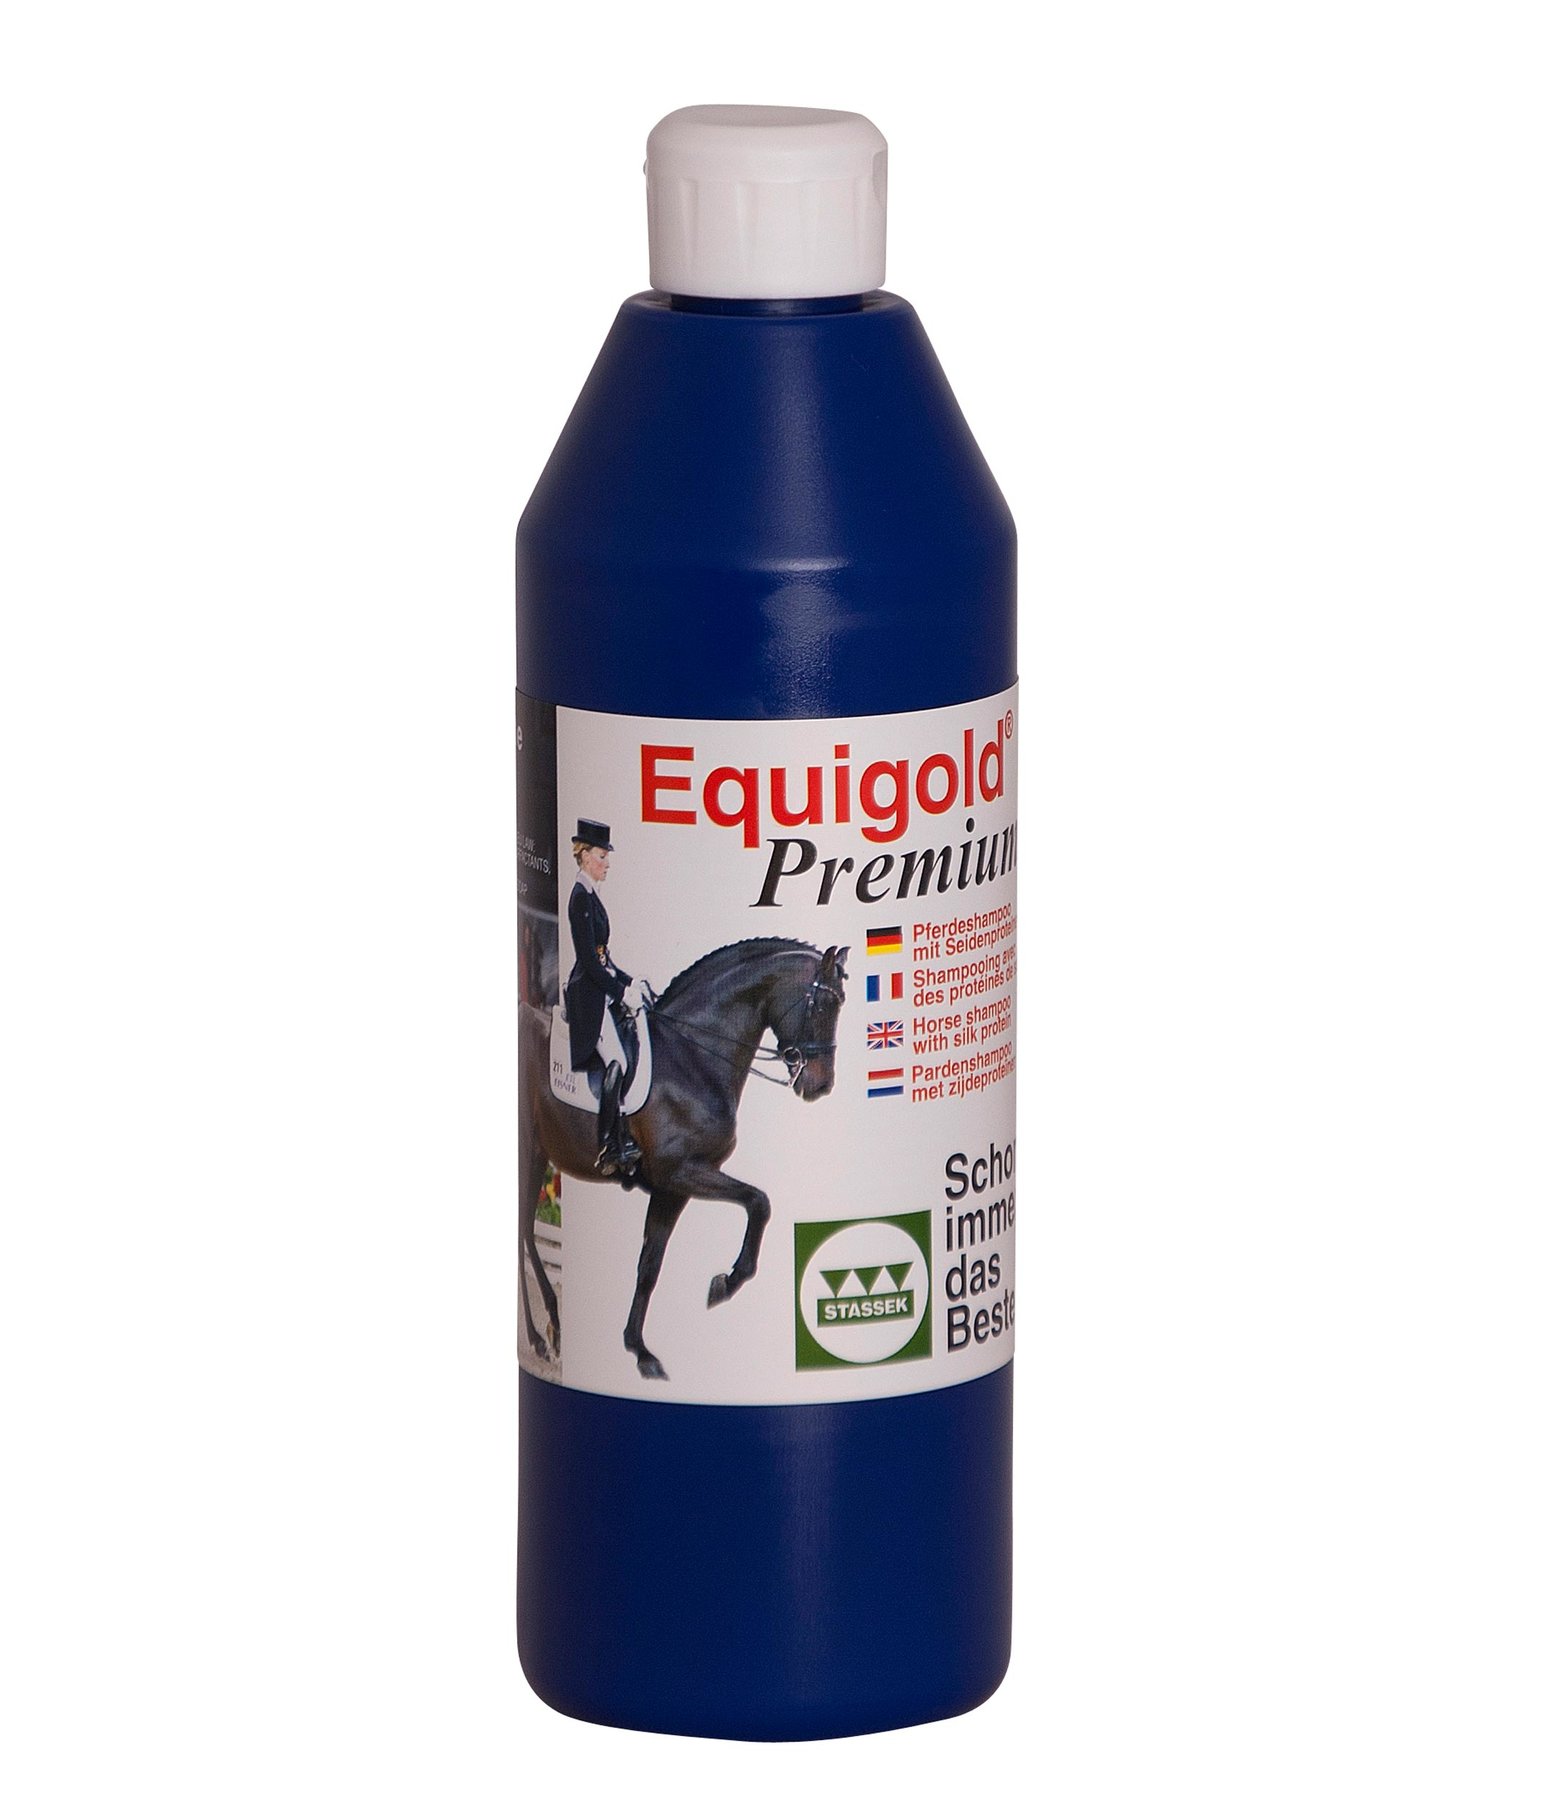 Equigold Premium shampoo per cavalli - Kramer Equitazione